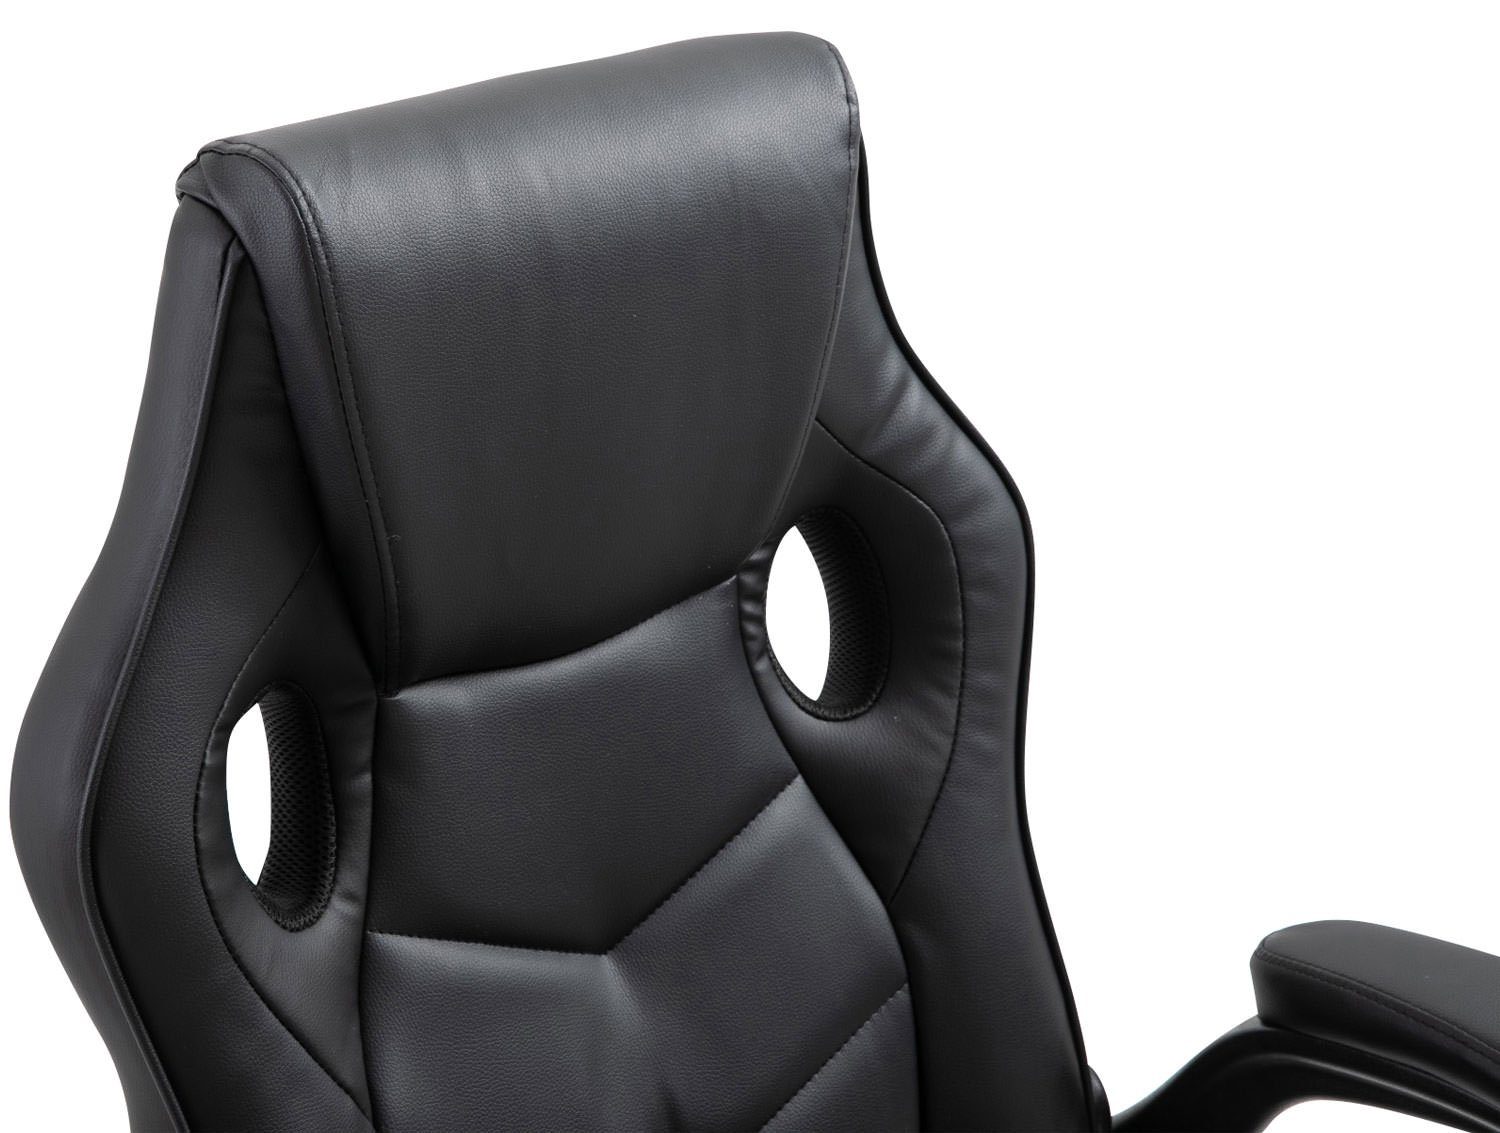 CLP Gaming Kunstleder, Chair schwarz/schwarz drehbar höhenverstellbar und Omis